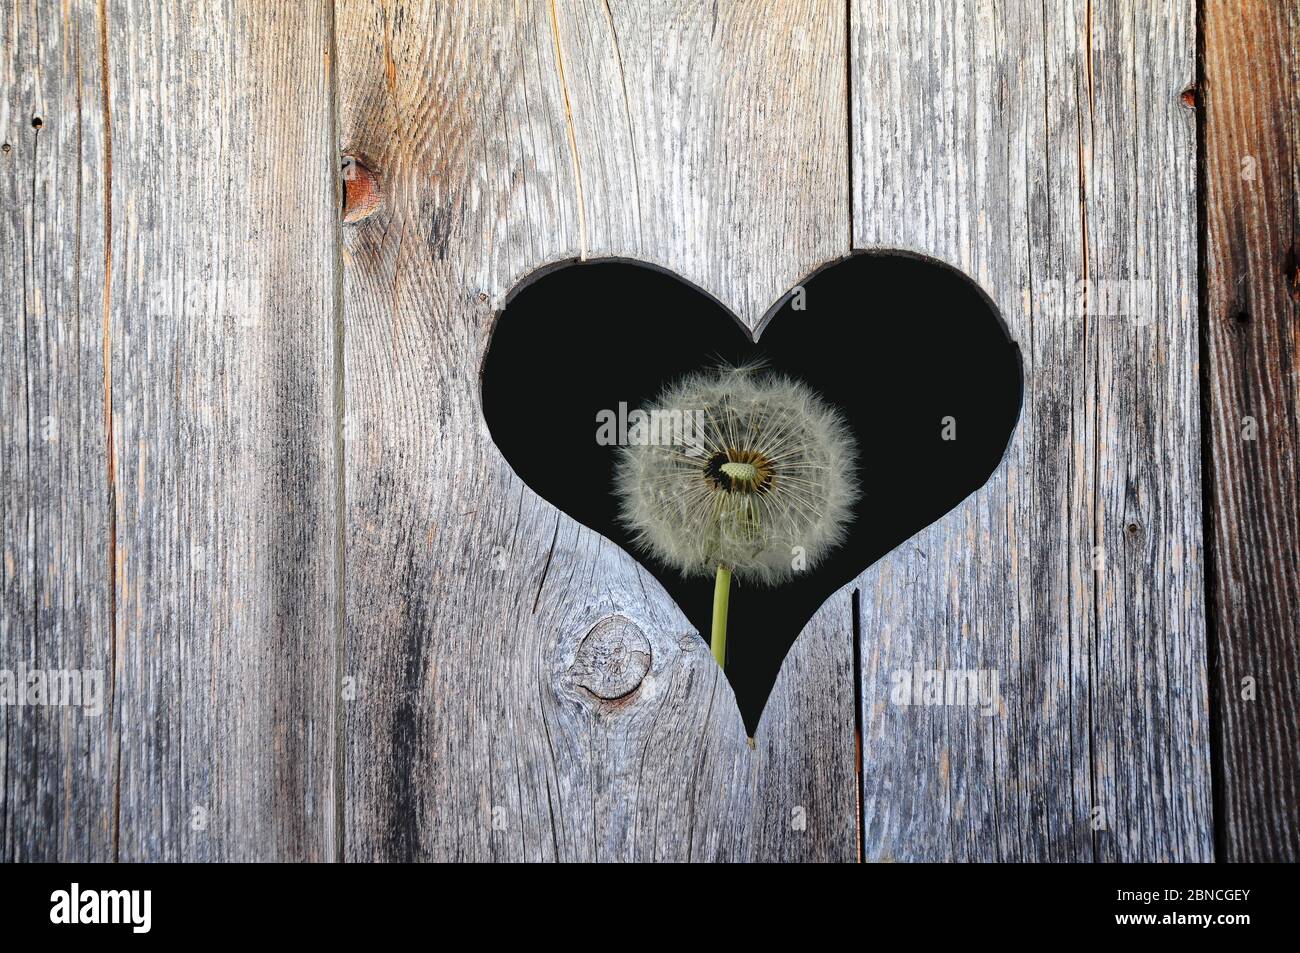 Heart in a wooden door with dandelions behind it, composing Stock Photo